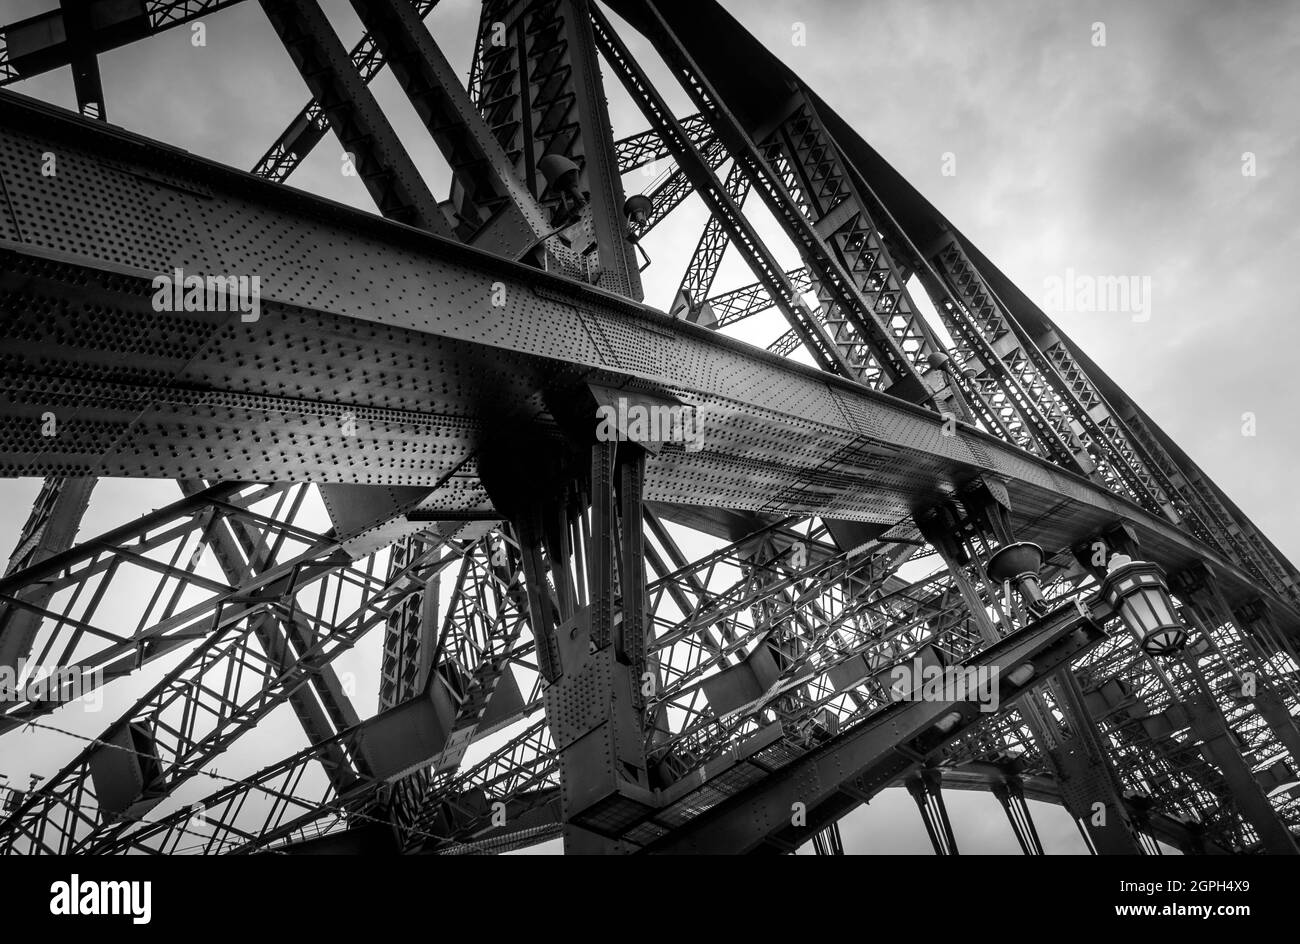 Schwarz-weißes Bild mit Details auf der Hafenbrücke von Sydney, das Struktur mit Nieten zeigt. Keine Personen. Stockfoto